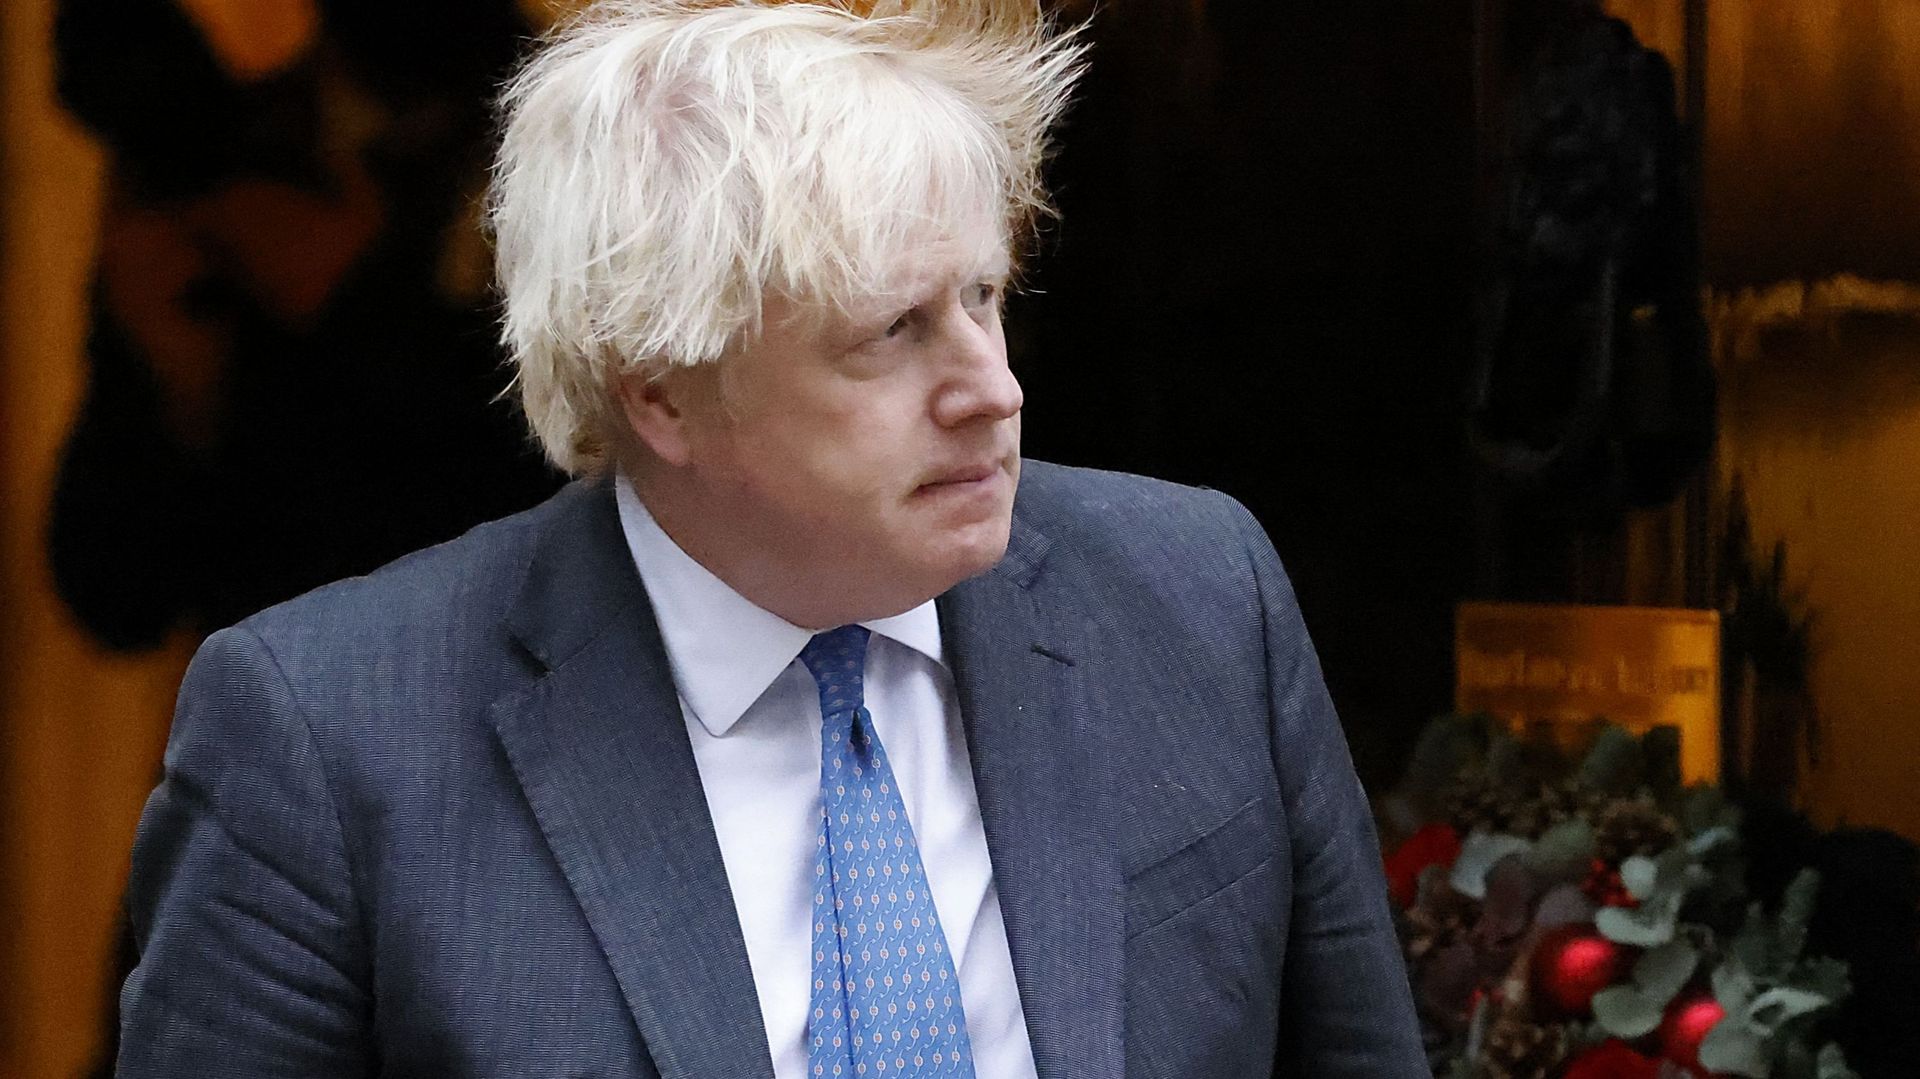 "Bouffonerie", "Il doit partir"... La crise s'aggrave pour Boris Johnson, qui a perdu son ministre du Brexit